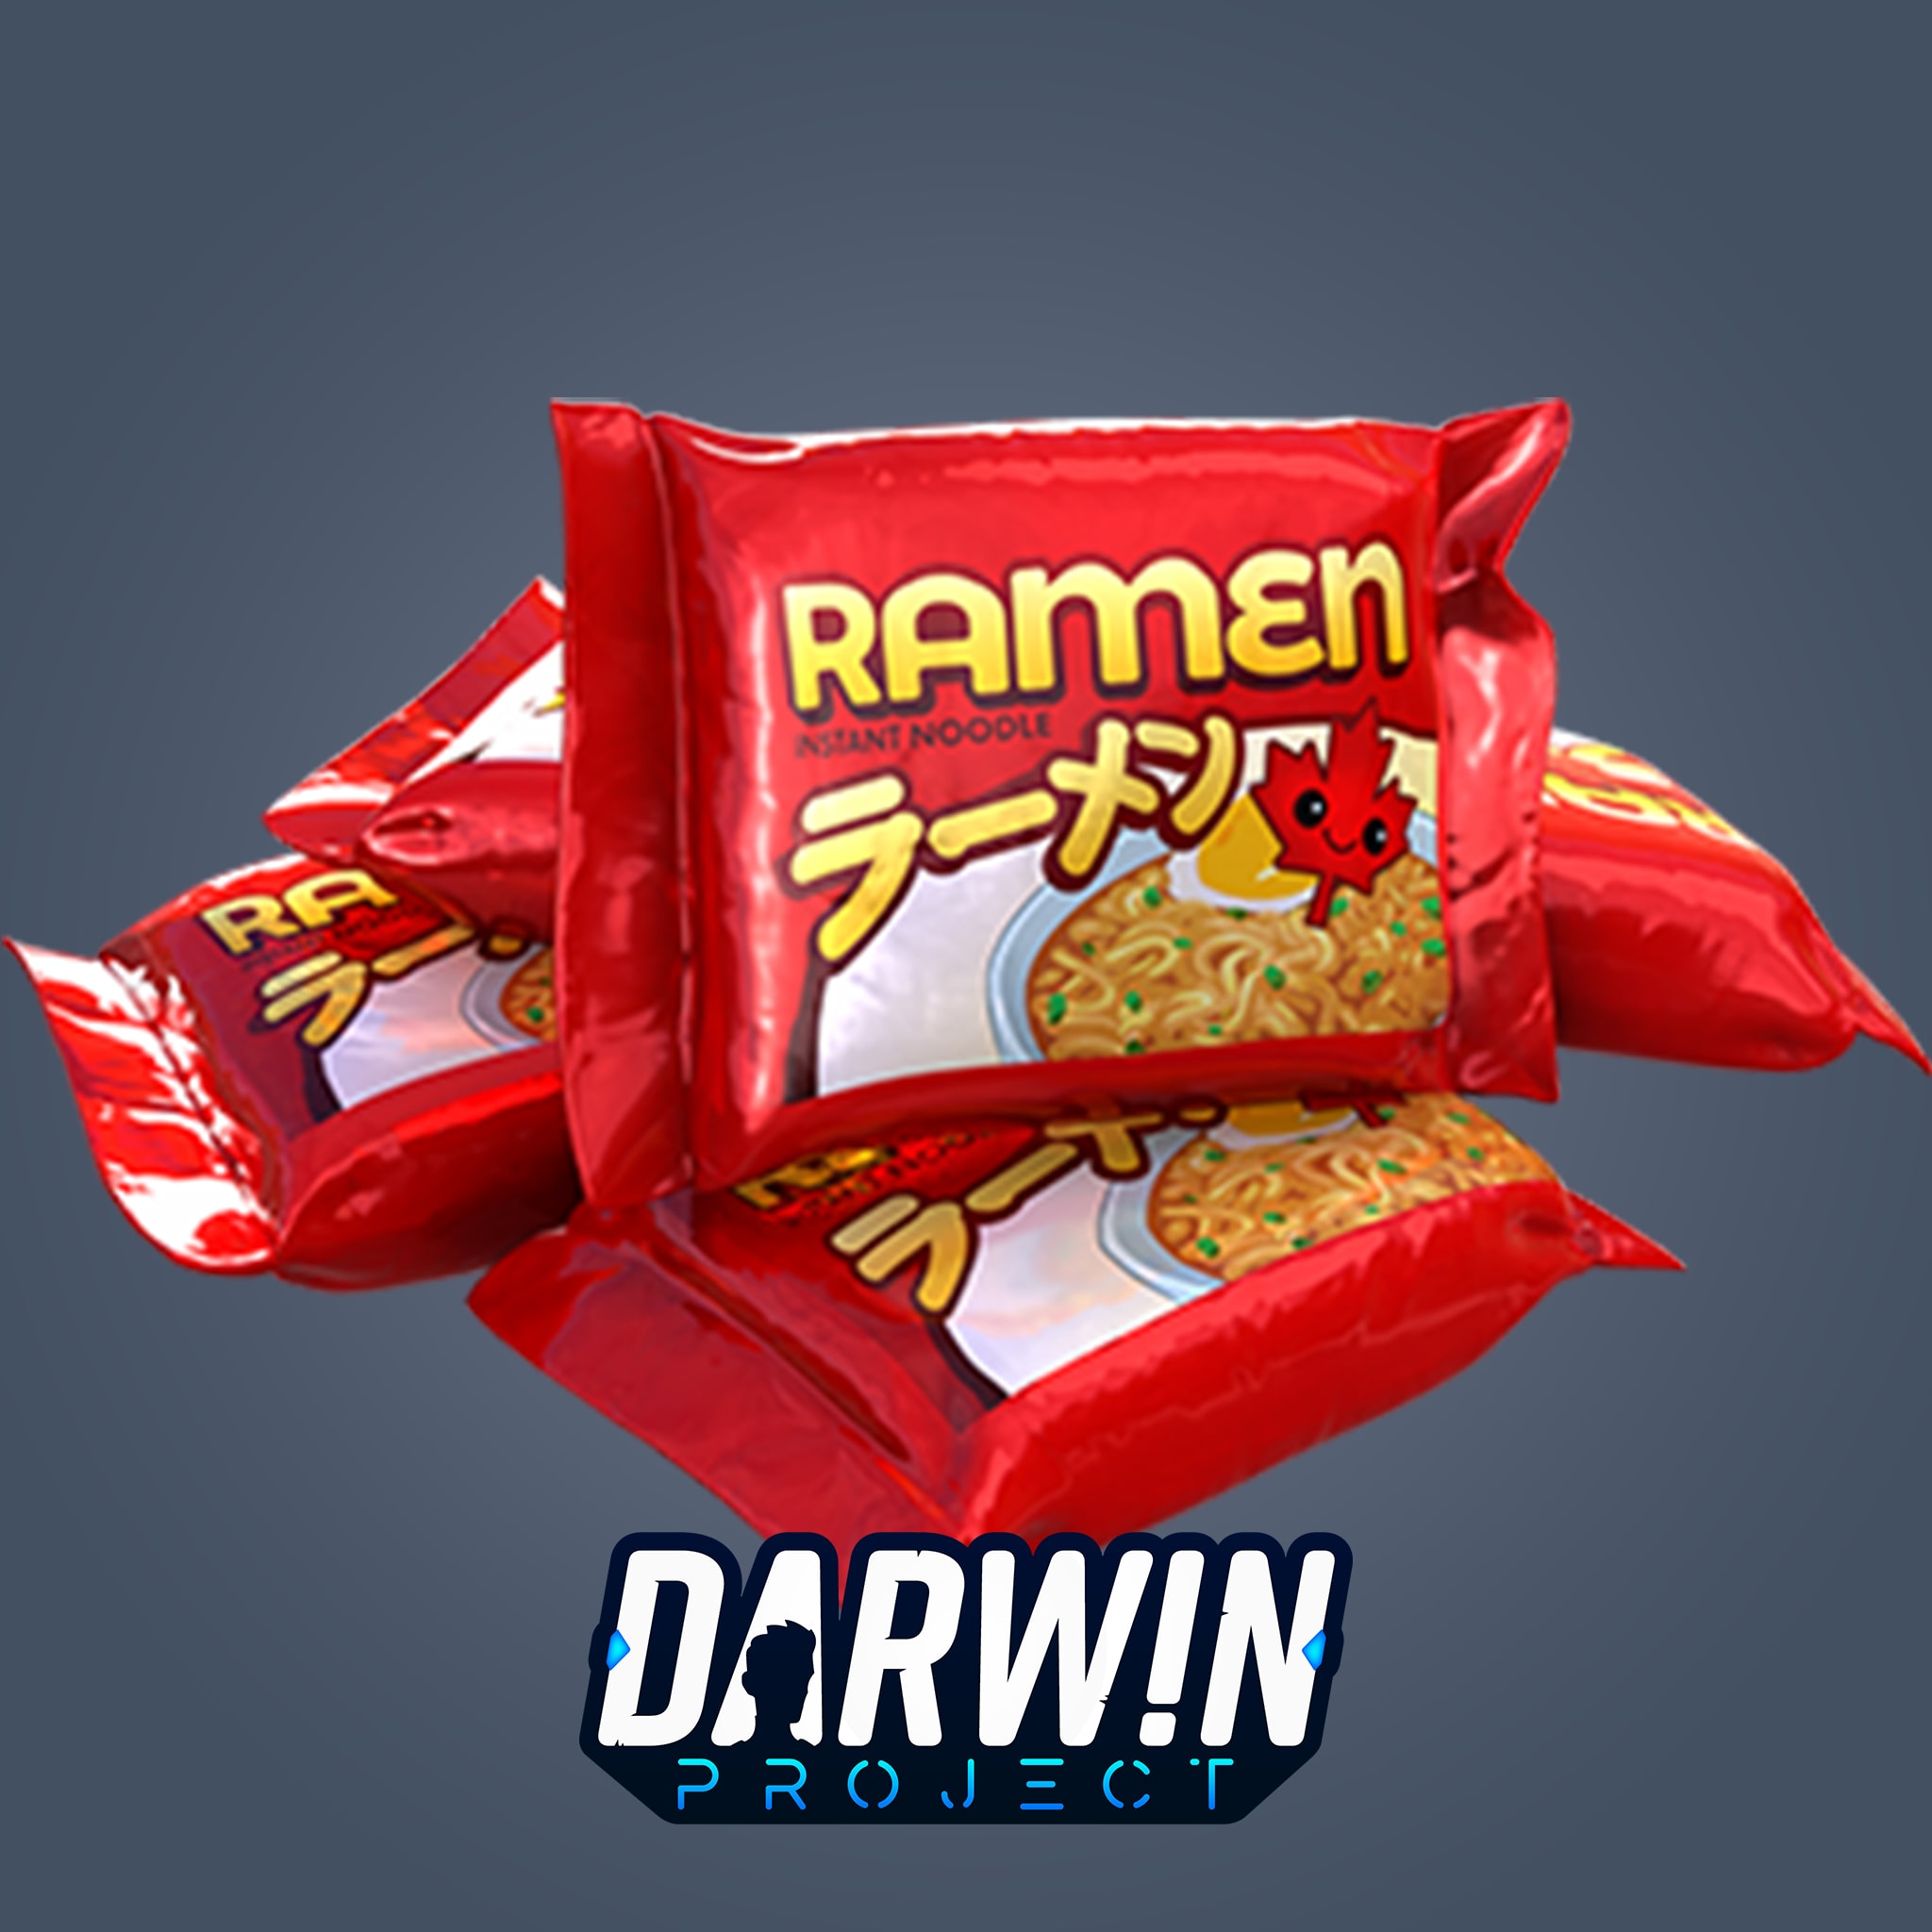 Darwin Project - Ramen Snack